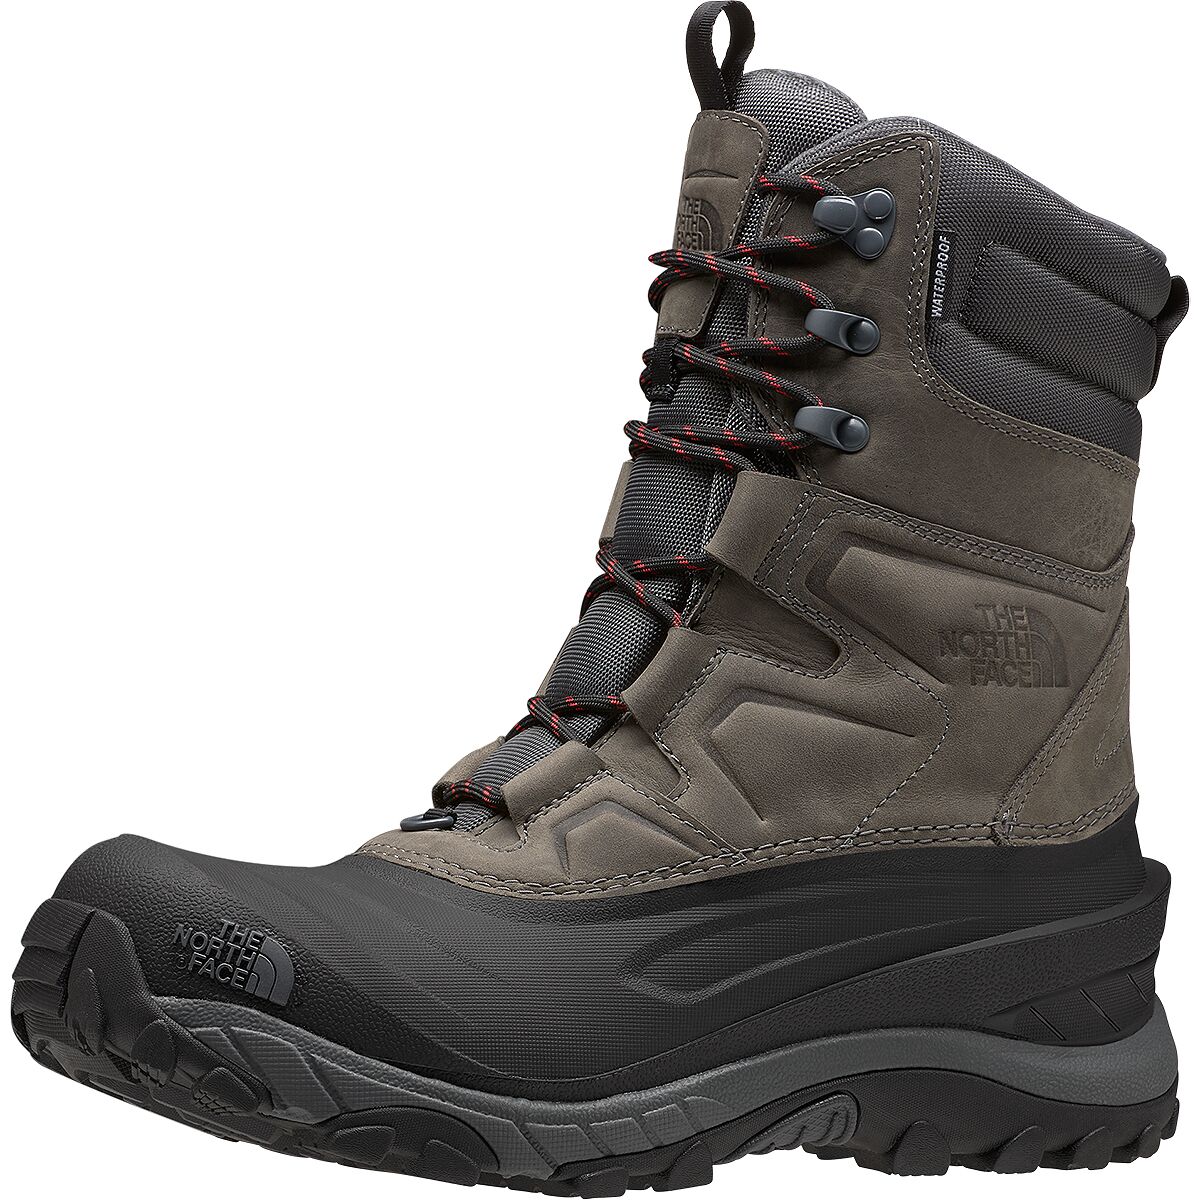 Chilkat 400 II Boot - Men's